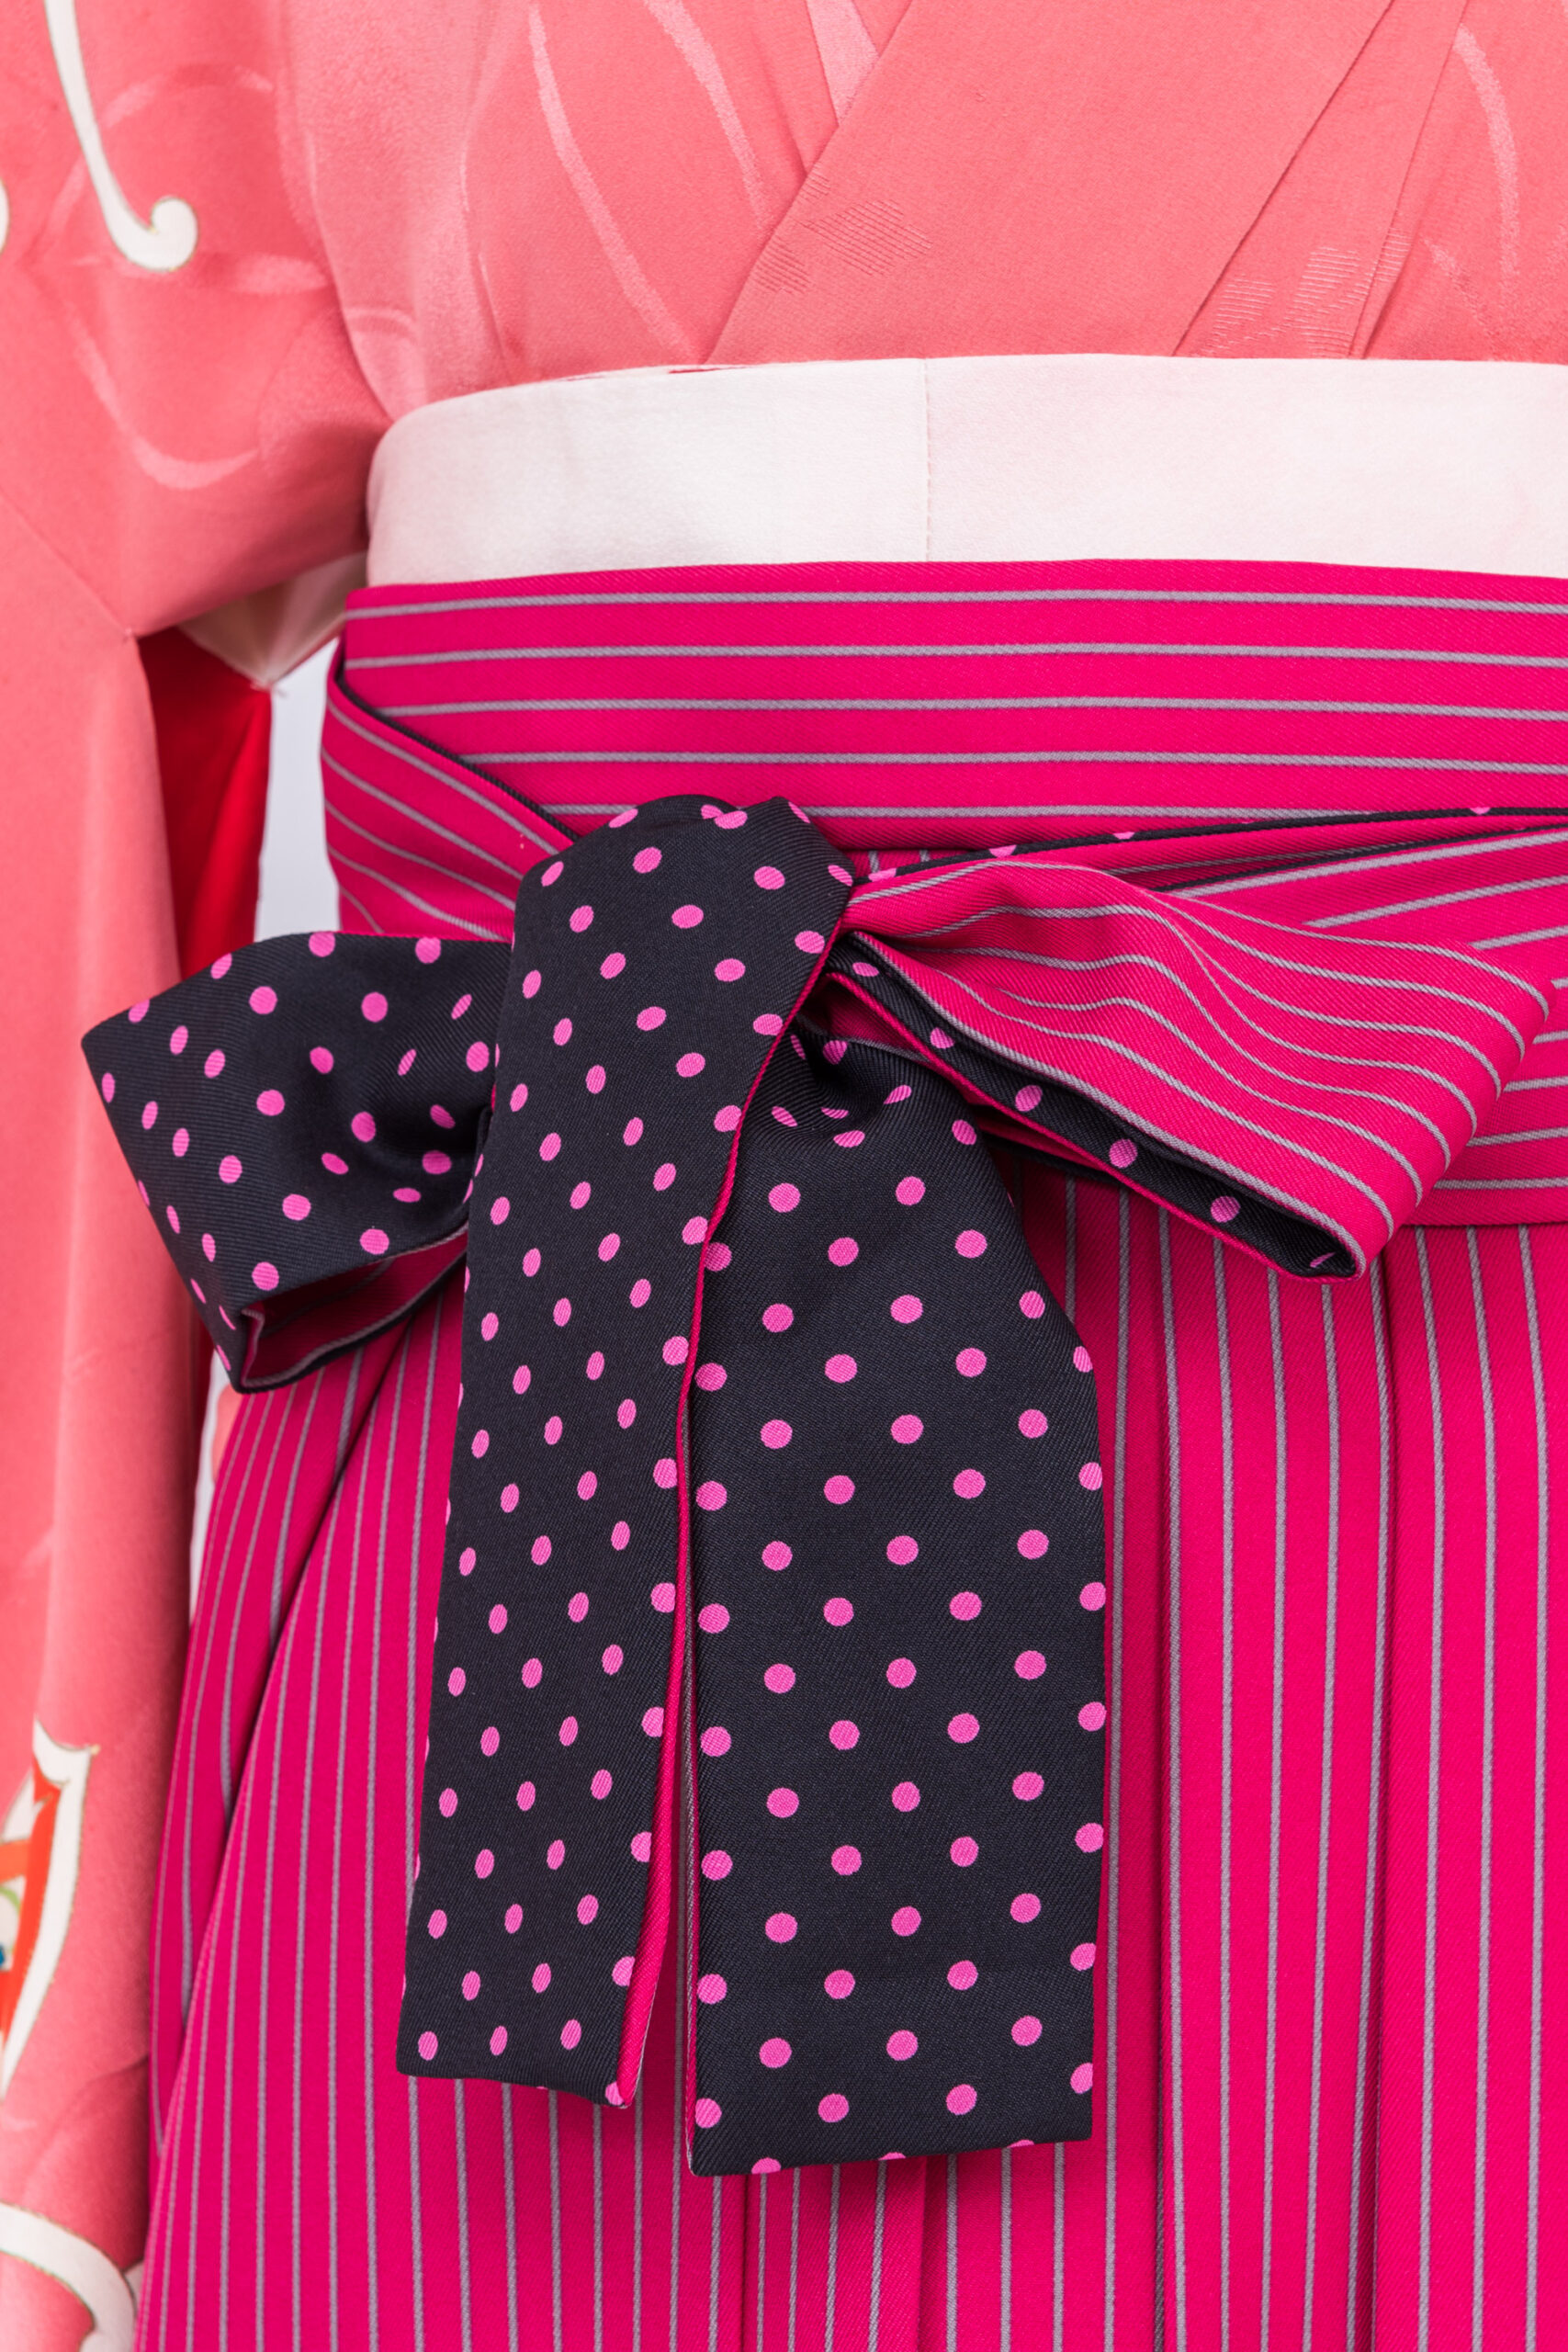 濃いピンク色にグレーの縦ストライプの袴 (L)【hal014】